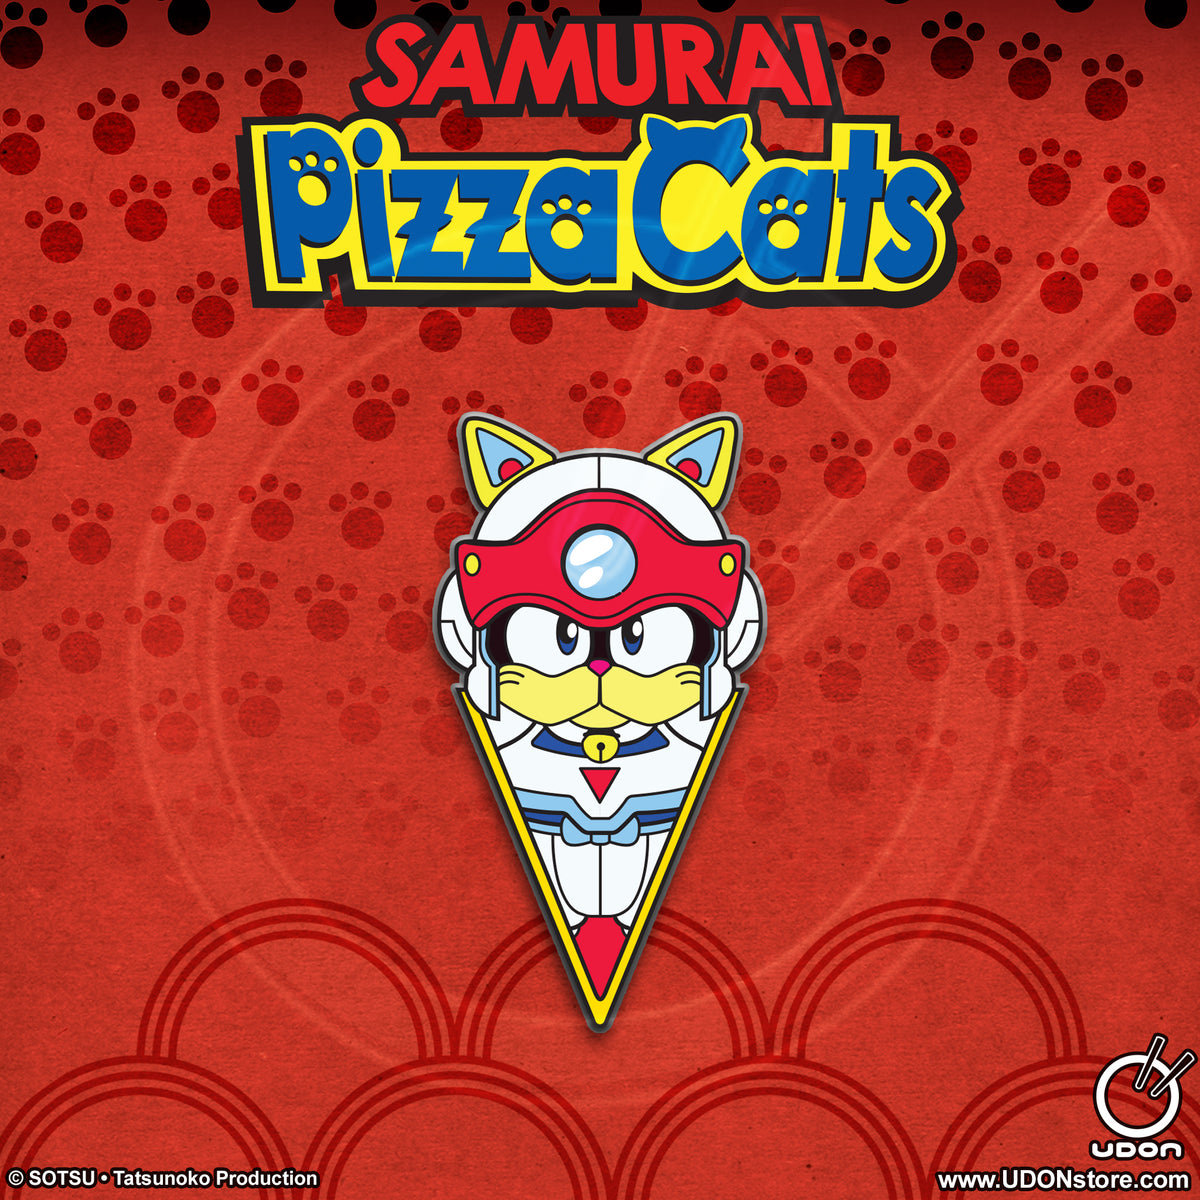 Samurai Pizza Cats - Speedy Cerviche Collectible Pin – UDON Entertainment